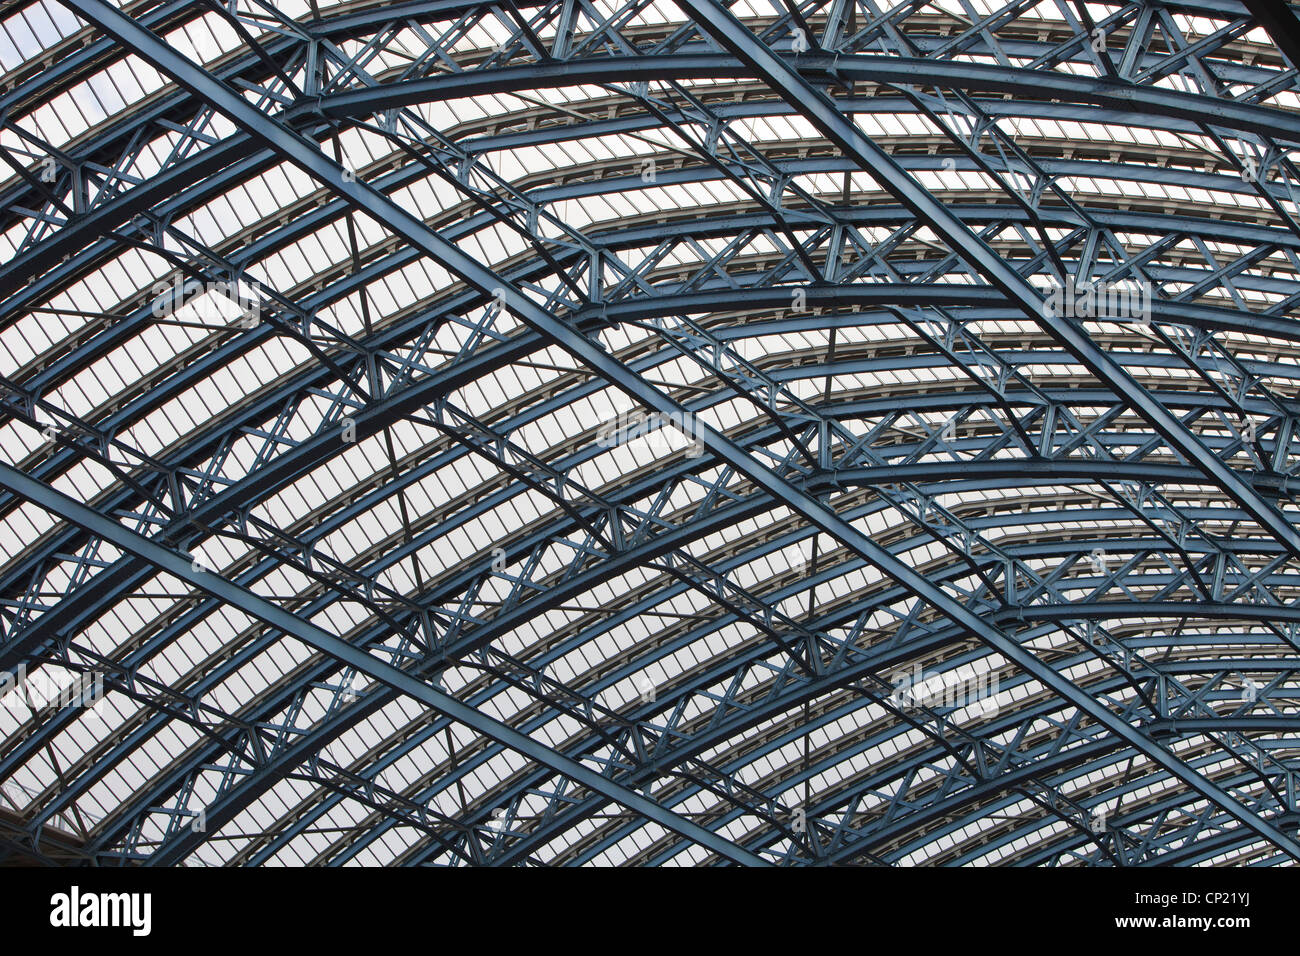 Die innere Dachfläche von St Pancras Station, London, UK. Stockfoto